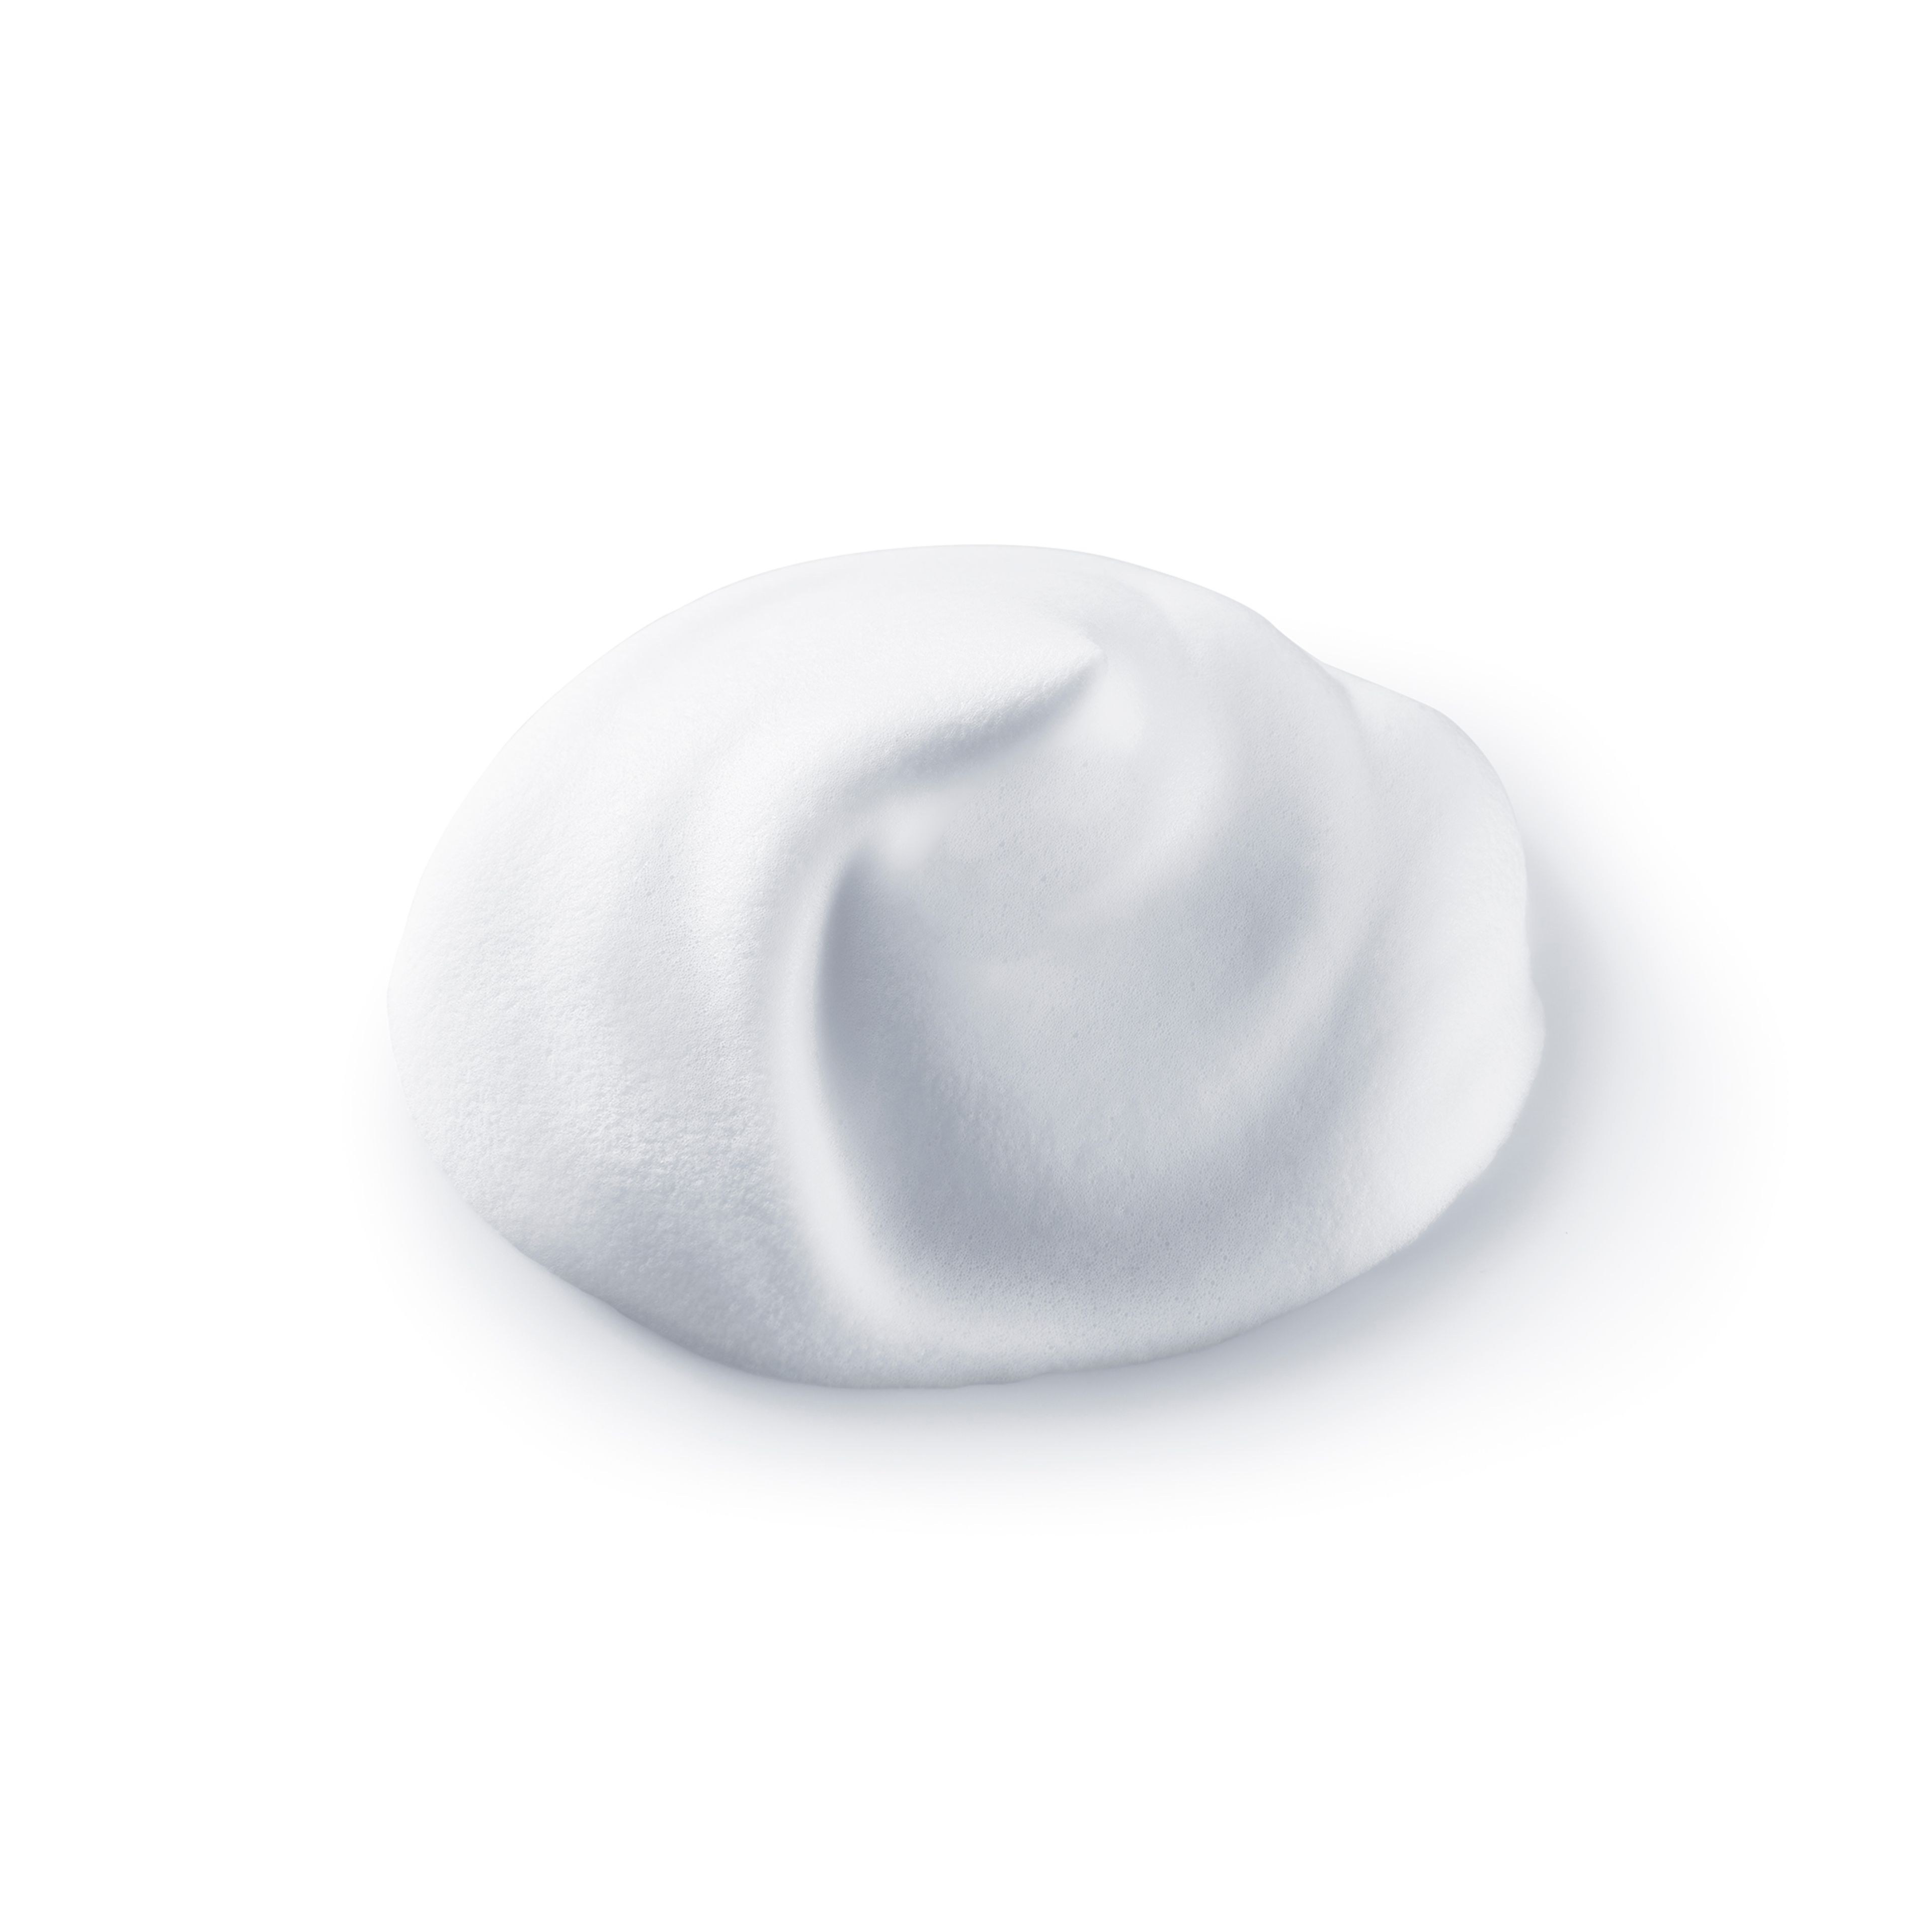 Shiseido Clarifying Cleansing Foam 3